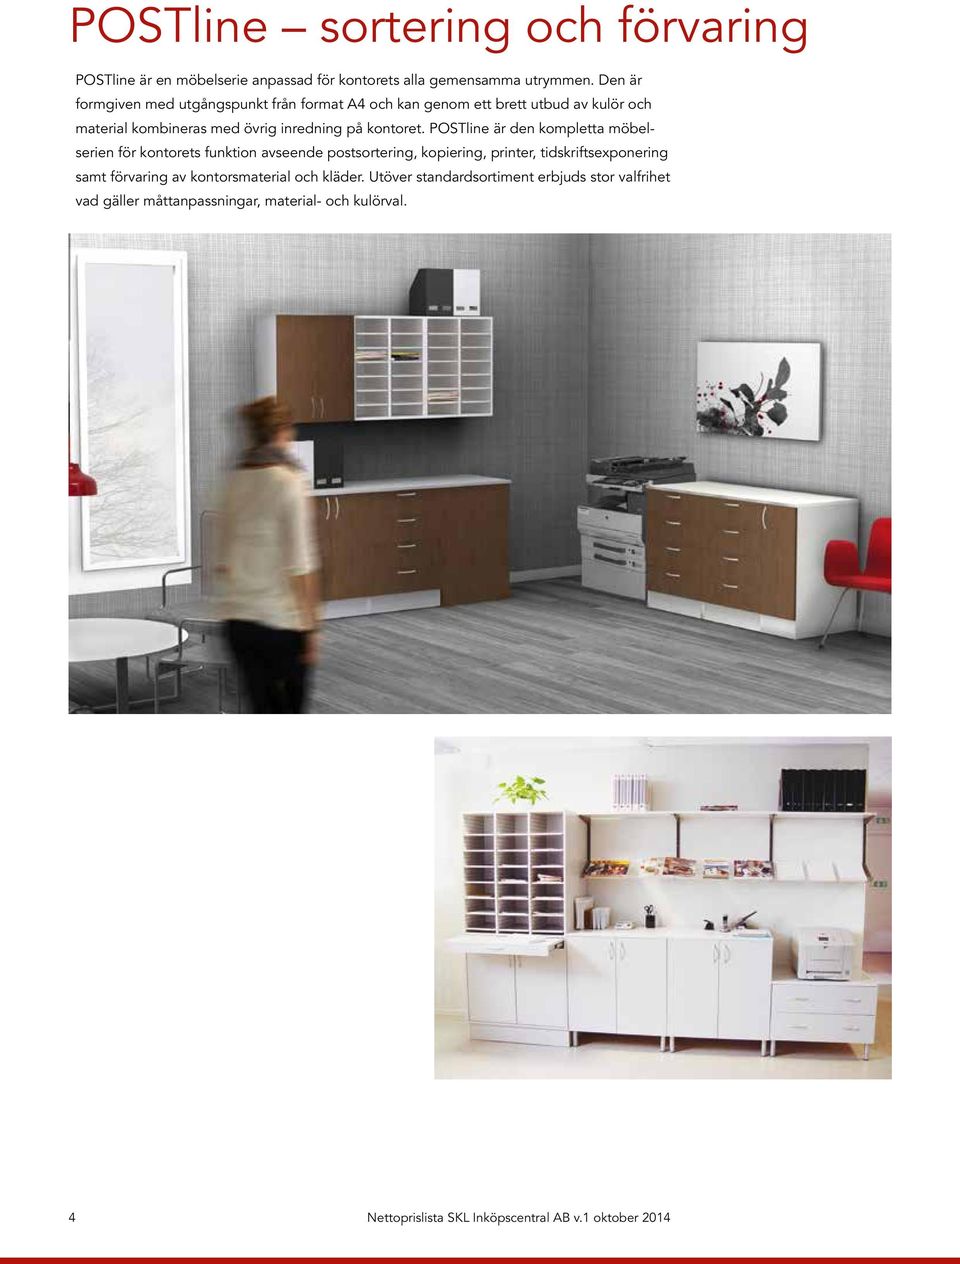 POSTline är den kompletta möbelserien för kontorets funktion avseende postsortering, kopiering, printer, tidskriftsexponering samt förvaring av